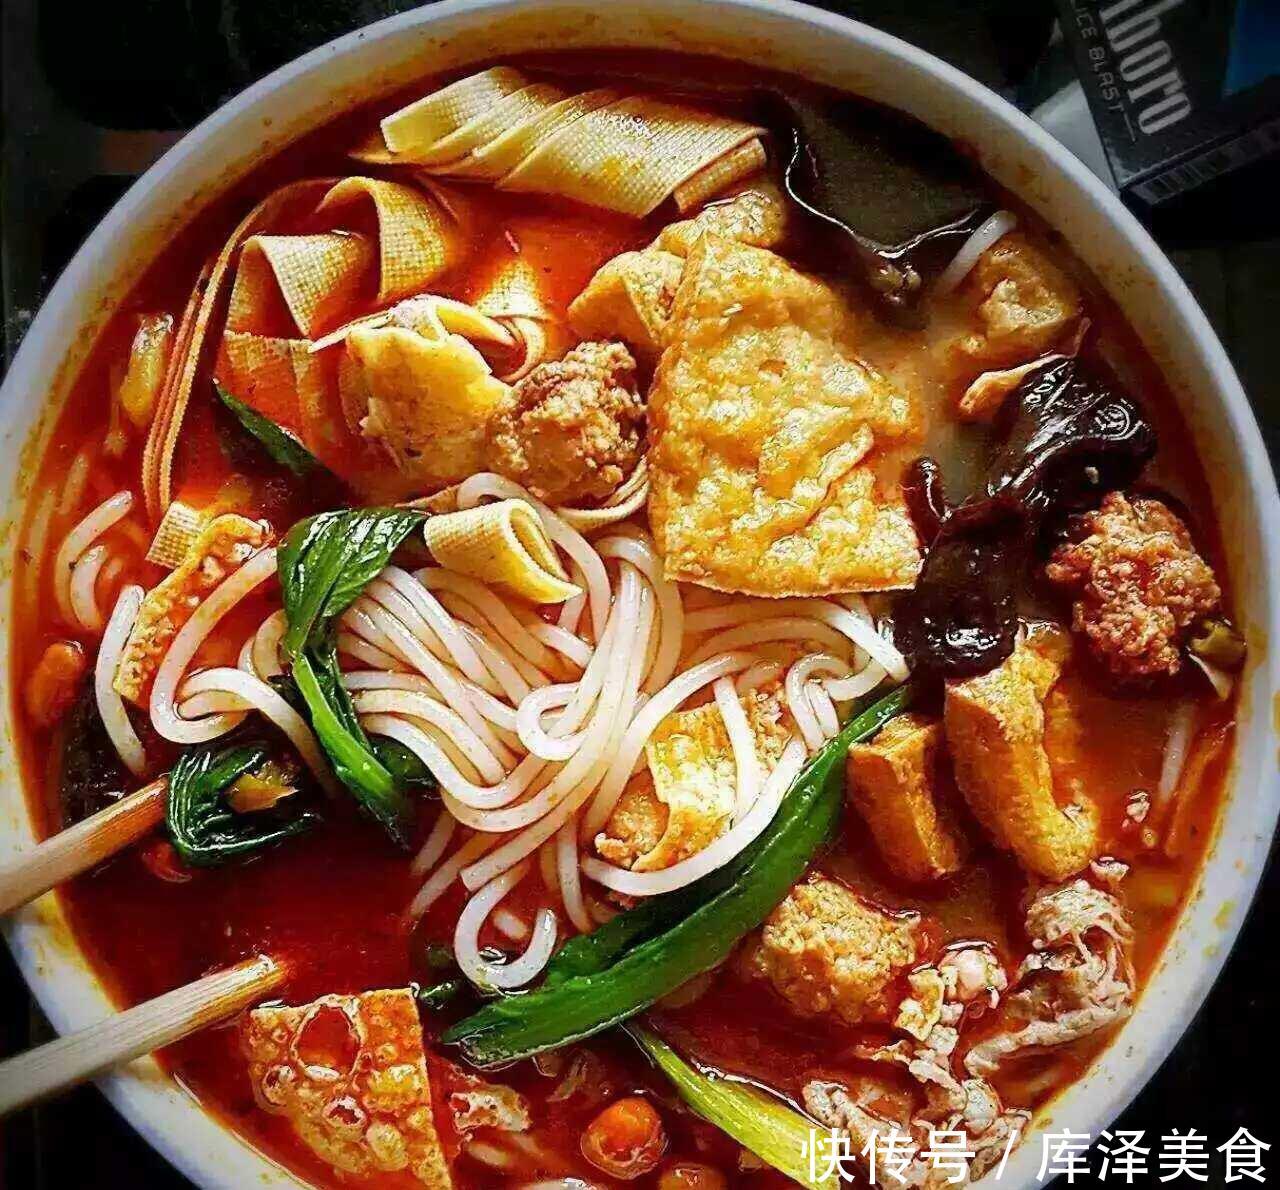 韩国人讨厌的5种中国食物,一口都不吃,中国人